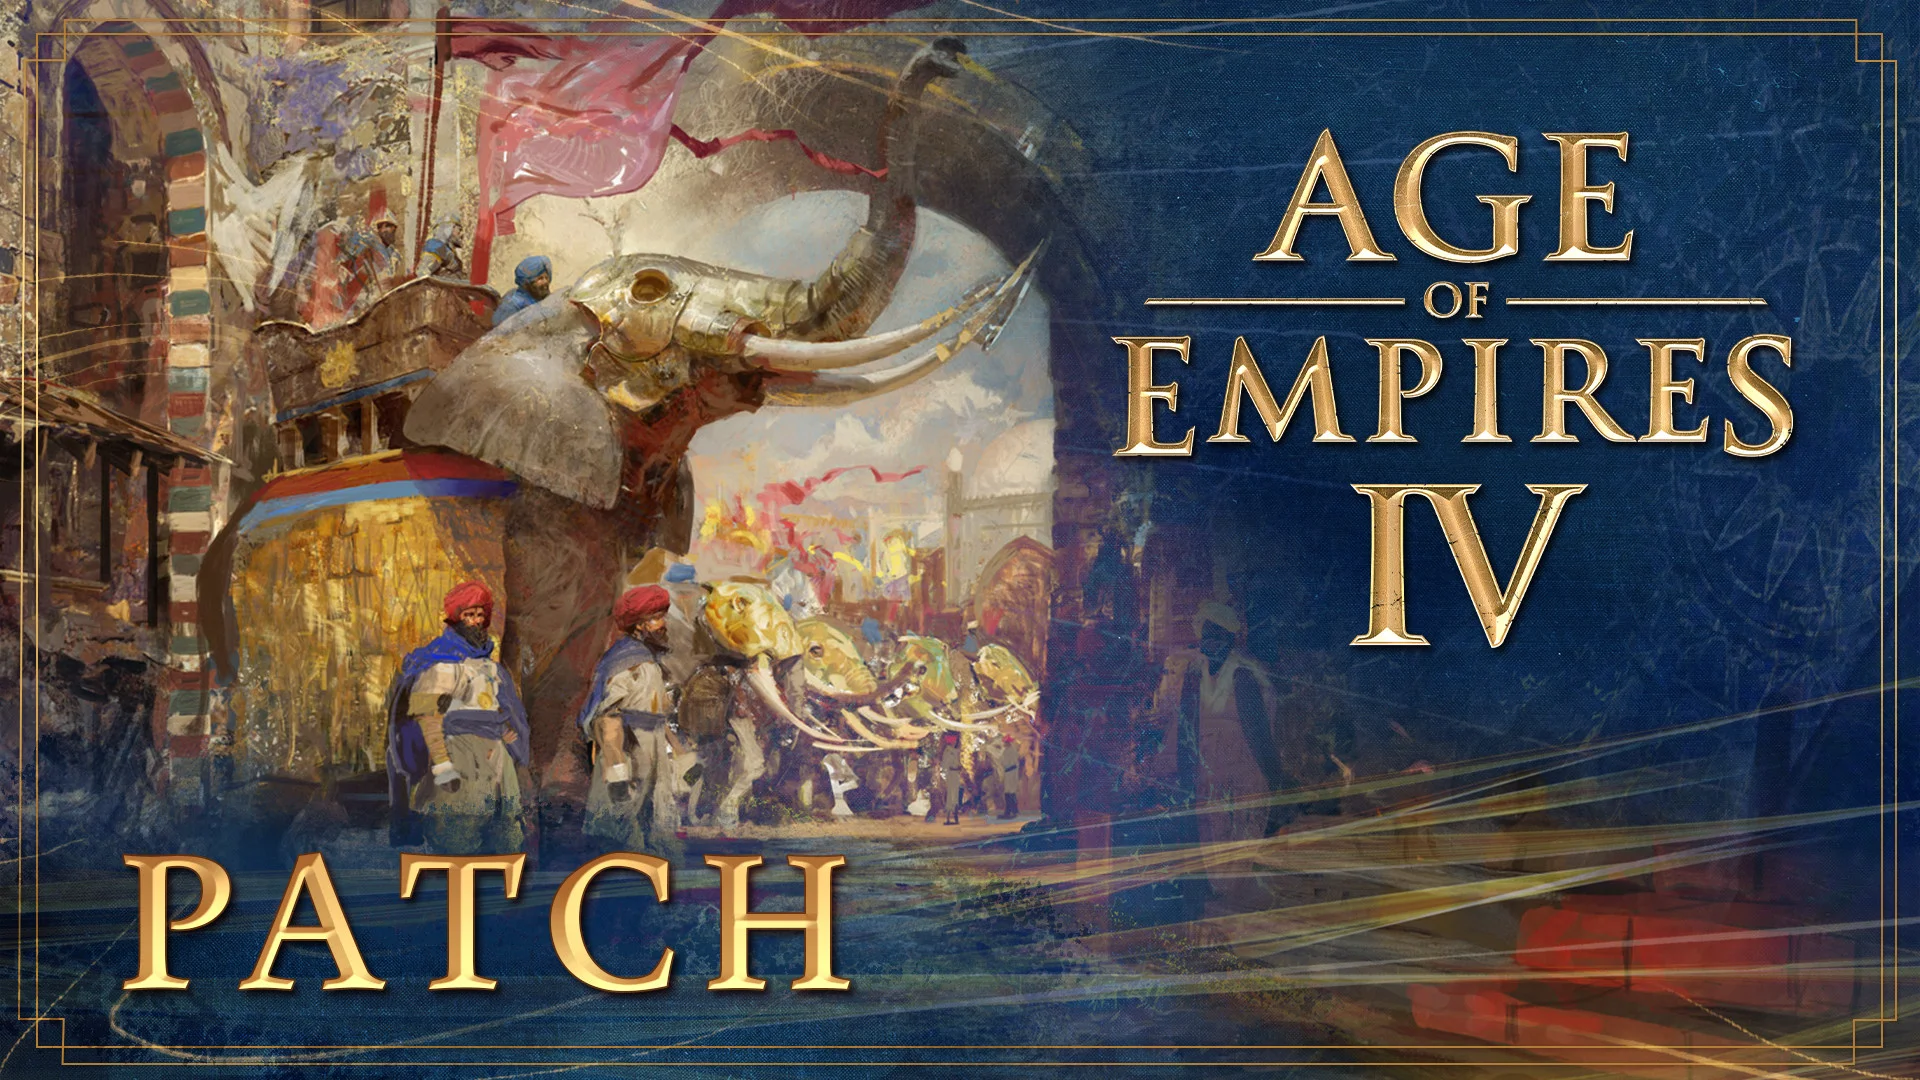 Свежий патч и тестирование ранговых боёв — грядущее обновление Age of Empires IV - фото 1